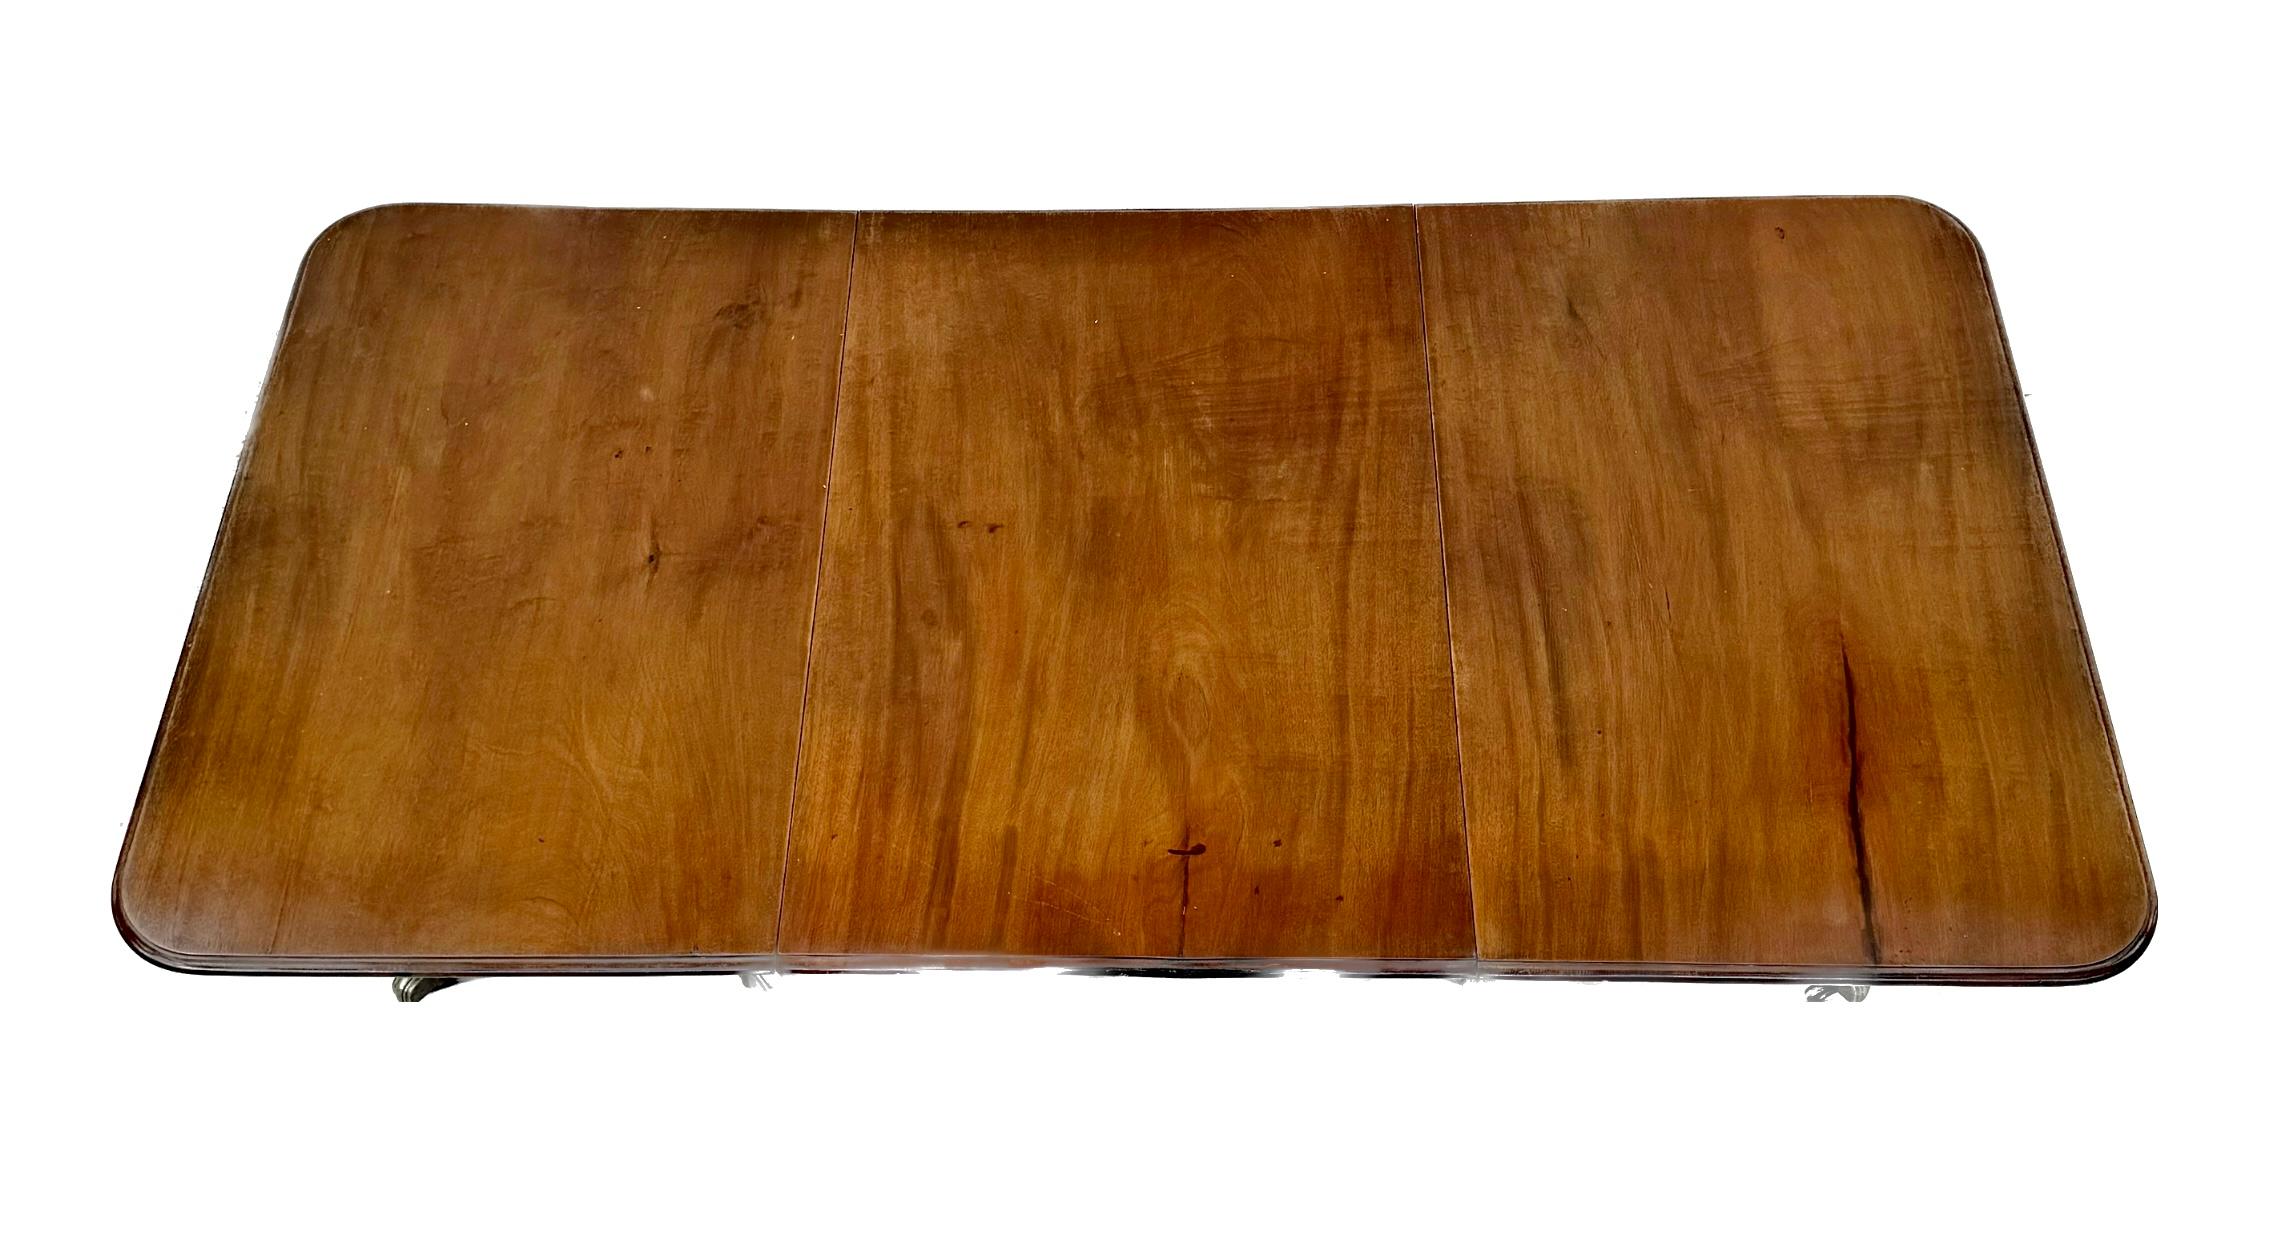 Feiner englischer Regency-Mahagoni-Esstisch aus dem frühen 19. Jahrhundert mit drei Sockeln und 2 Blättern. Dieser Tisch hat eine tolle Farbe und eine wunderbare warme, weiche Patina. Sehr gut gebaut in massivem kubanischen Mahagoni. 11 Fuß Tische